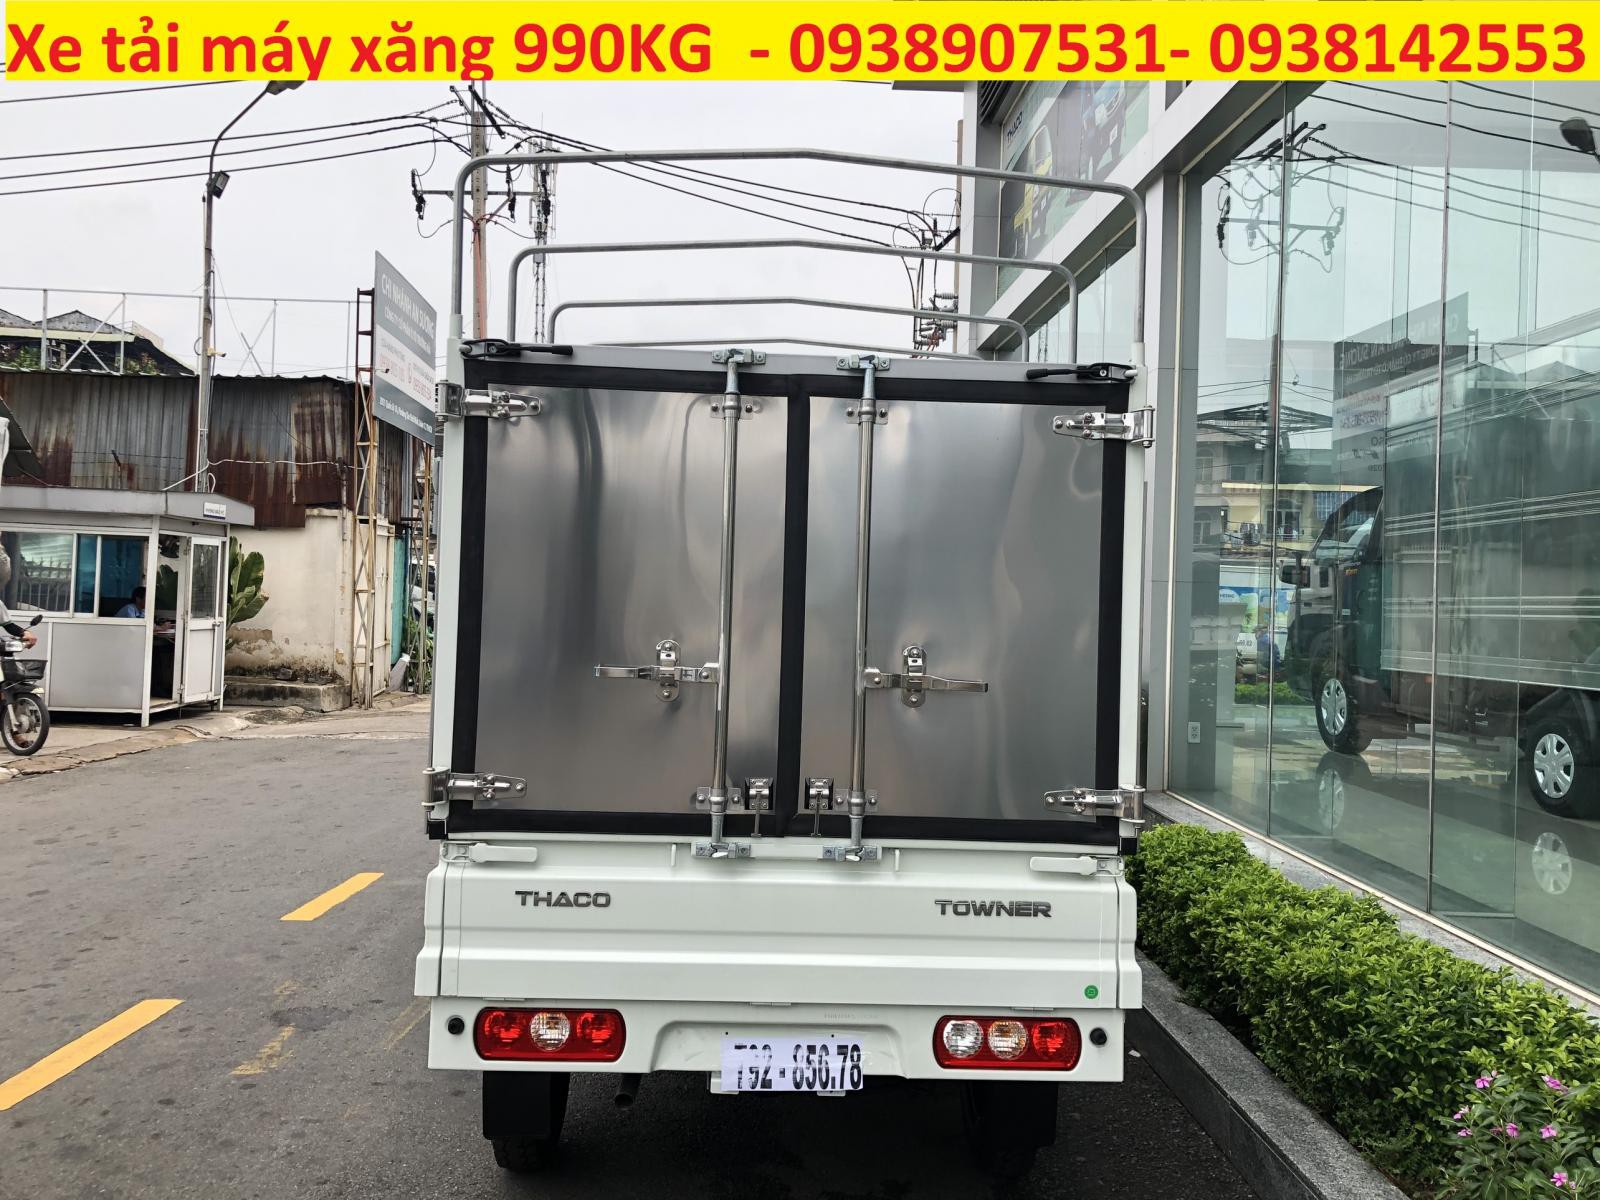 Thaco TOWNER 2020 - Giá bán xe tải nhỏ 990KG Thaco Towner990 thùng bạt, hỗ trợ vay ngân hàng